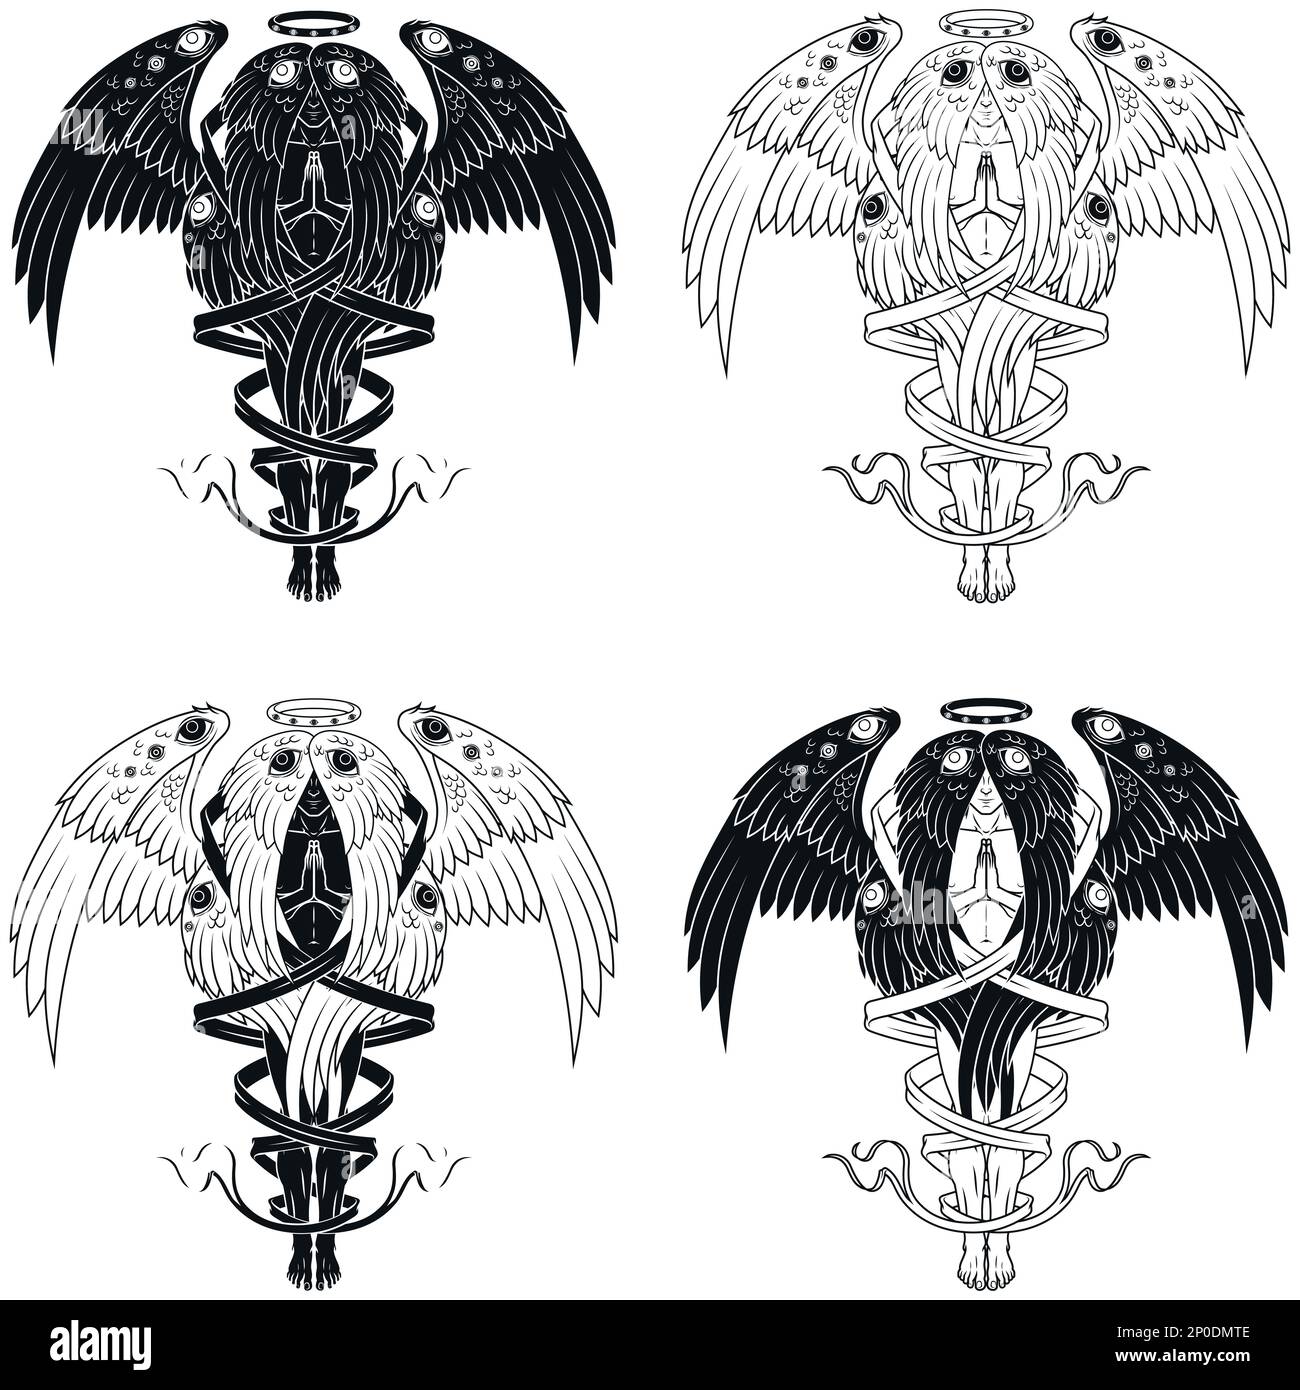 Dessin vectoriel d'ange de prière avec un halo, séraphé avec six ailes entourées d'un ruban, archange avec un halo et des plumes, ange de l'église catholique Illustration de Vecteur